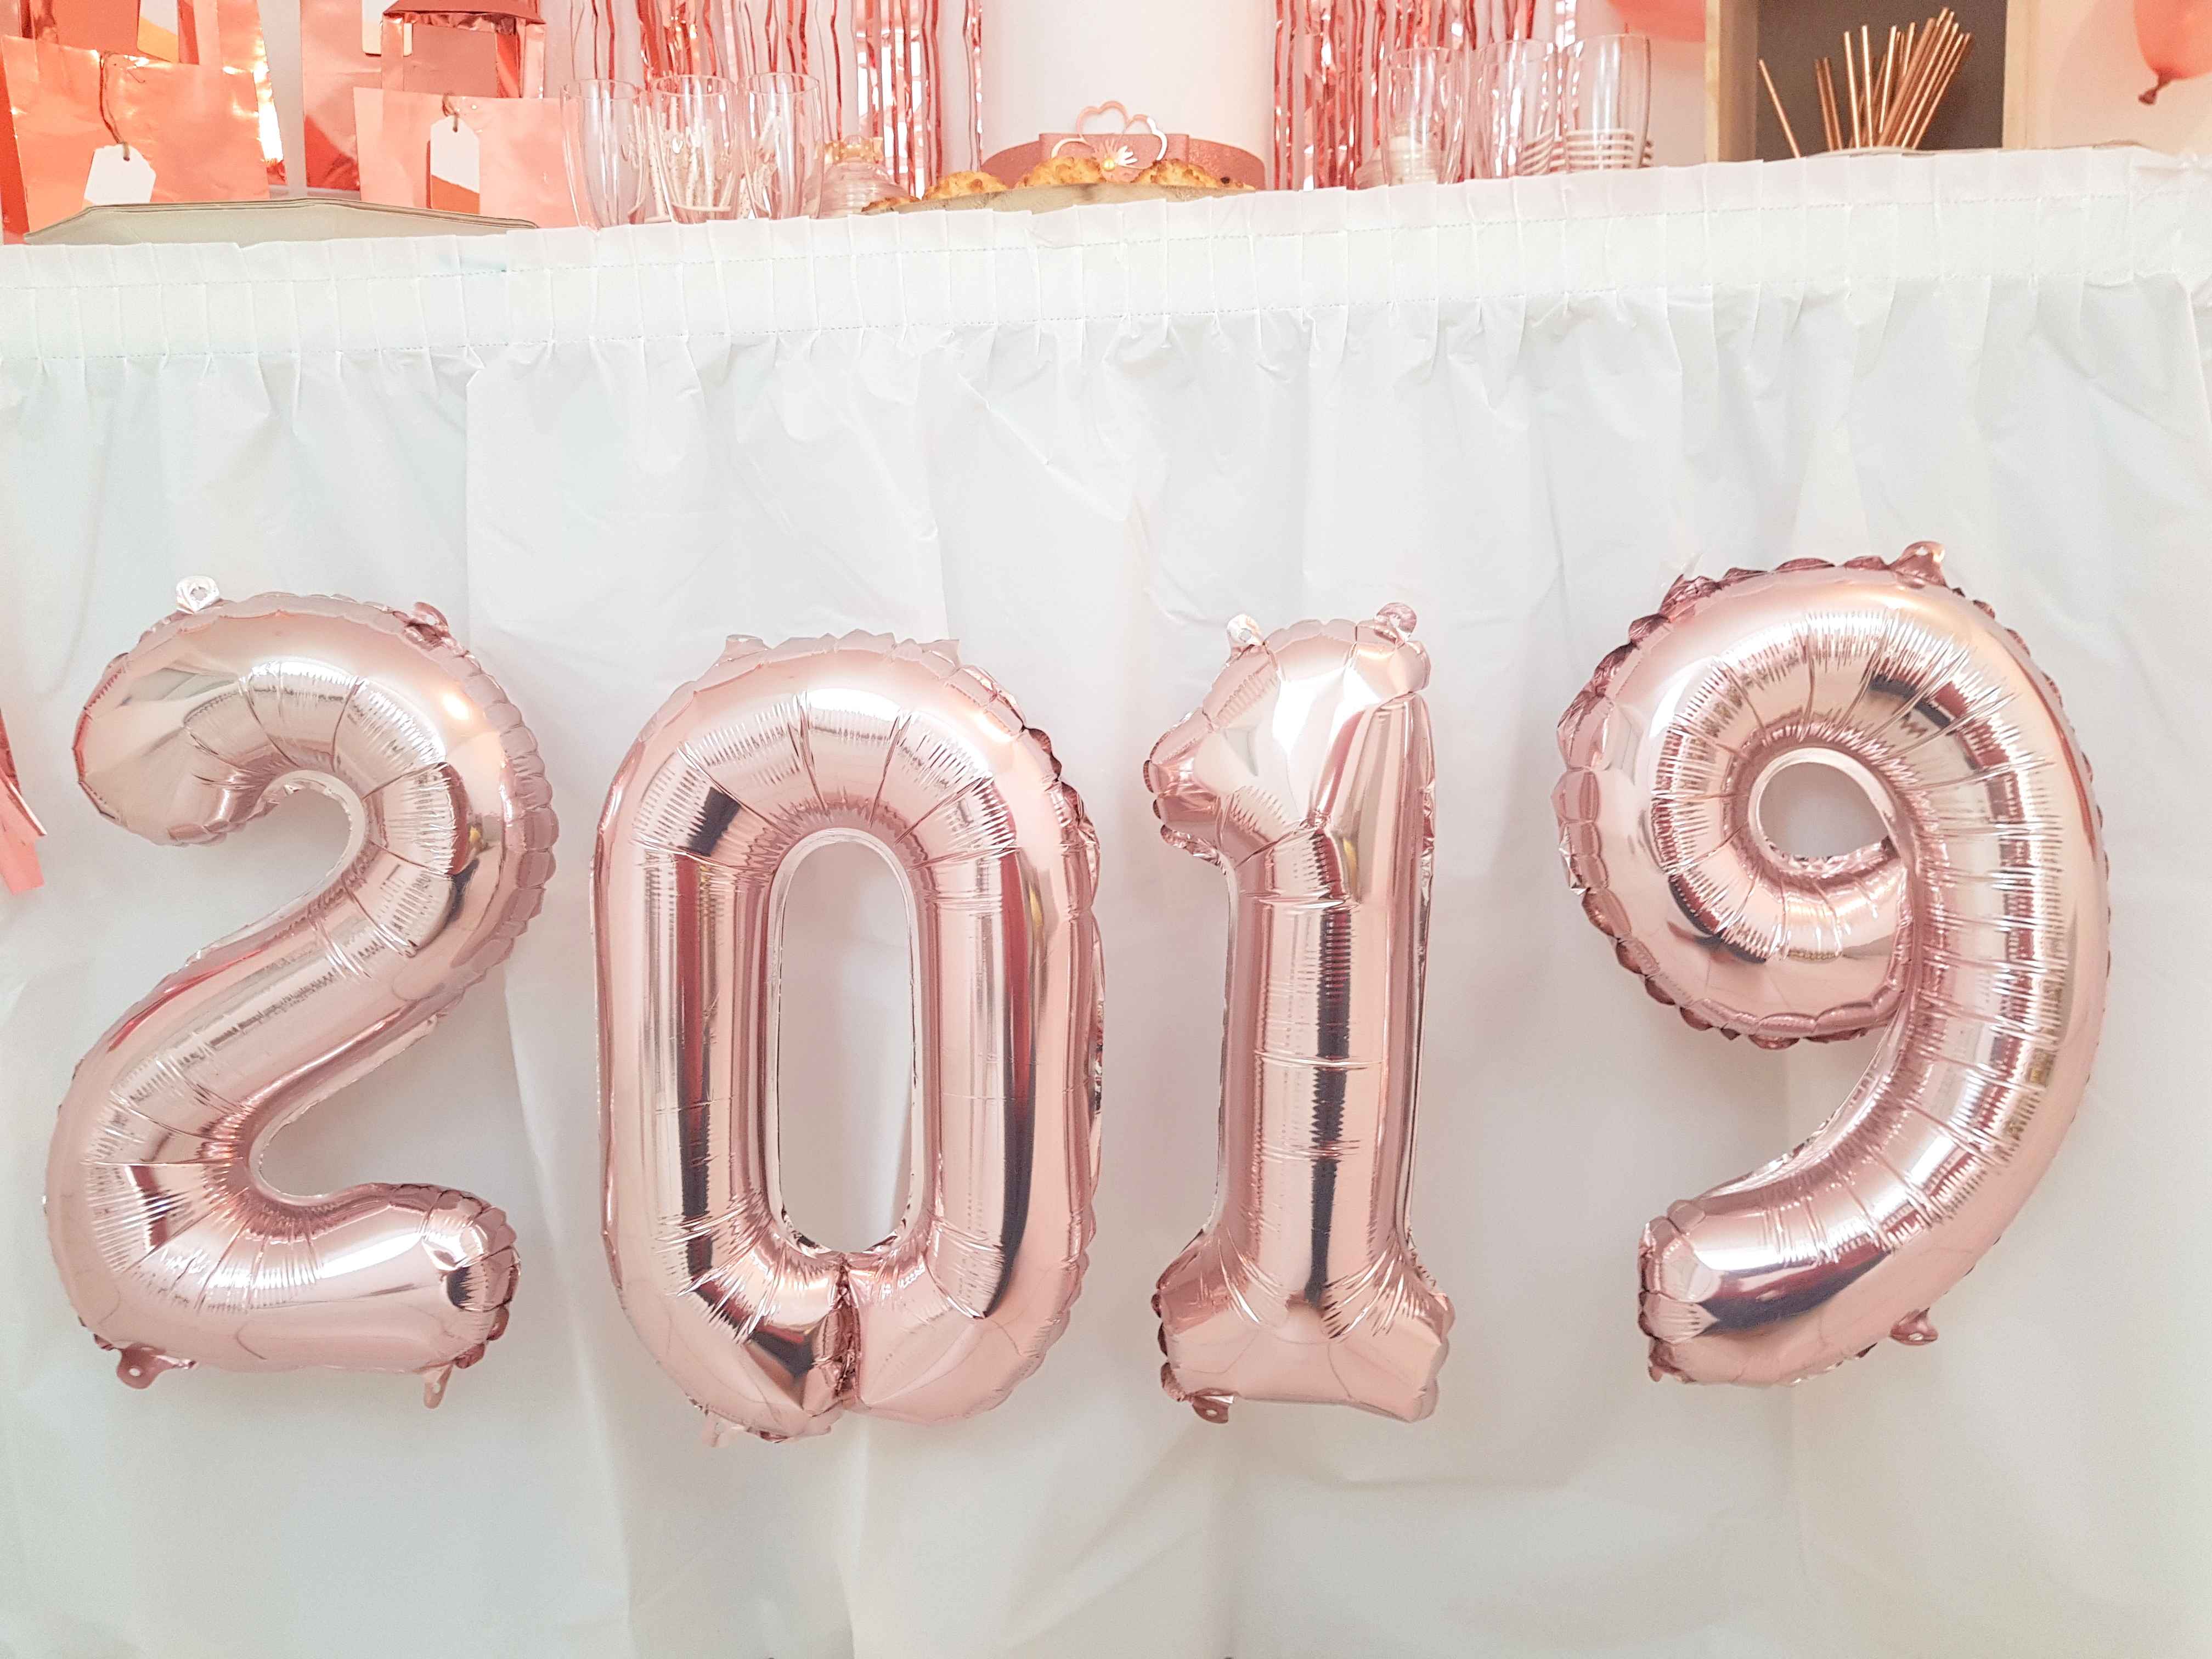 décoration sweet table rose gold nouvel an 2019 jour de l'an noël